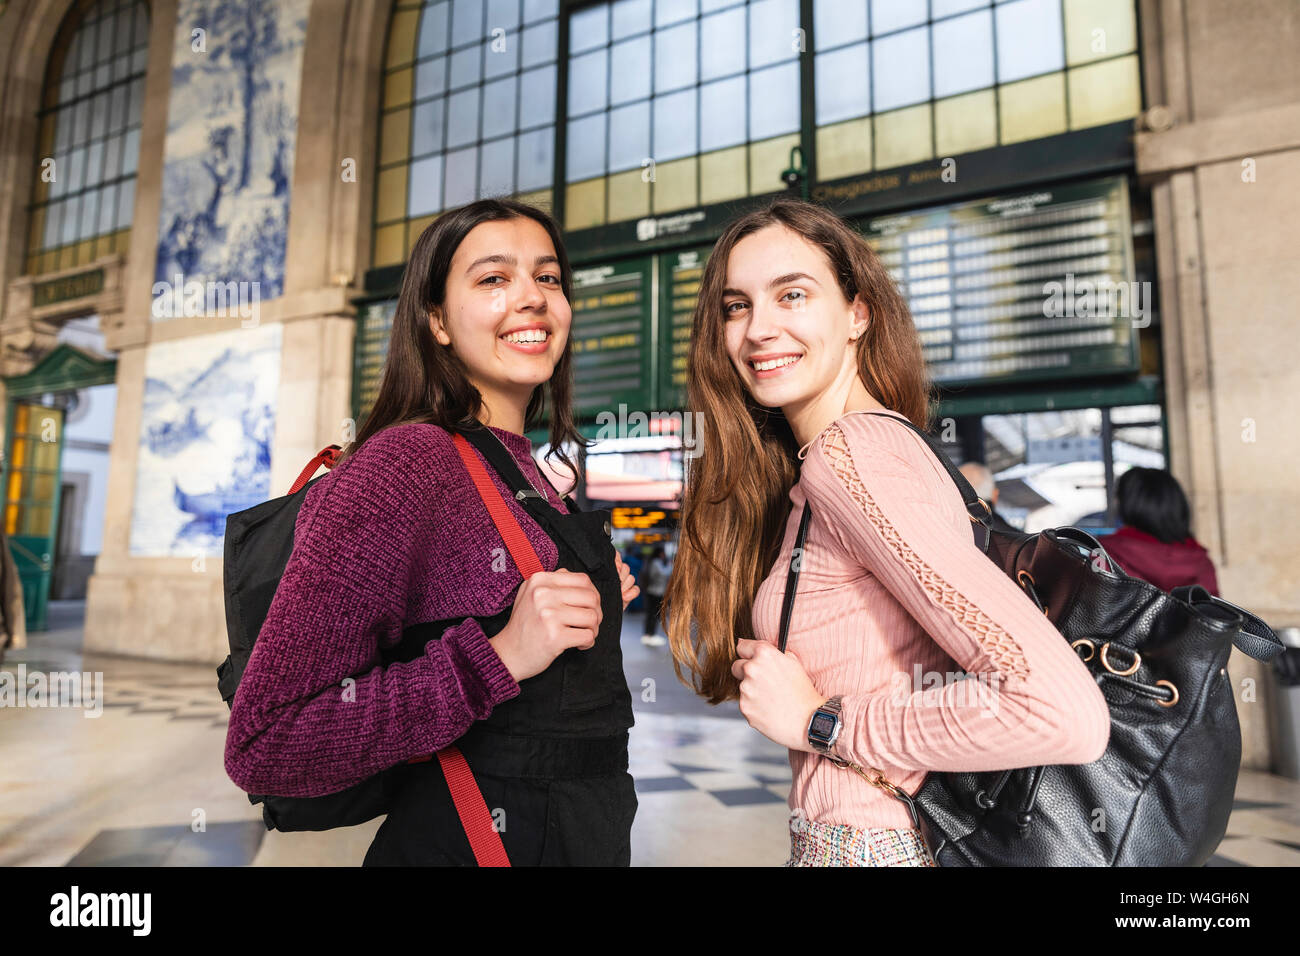 Portrait von zwei lächelnde junge Frauen mit Rucksäcken vor dem Bahnhof stehend, Porto, Portugal Stockfoto